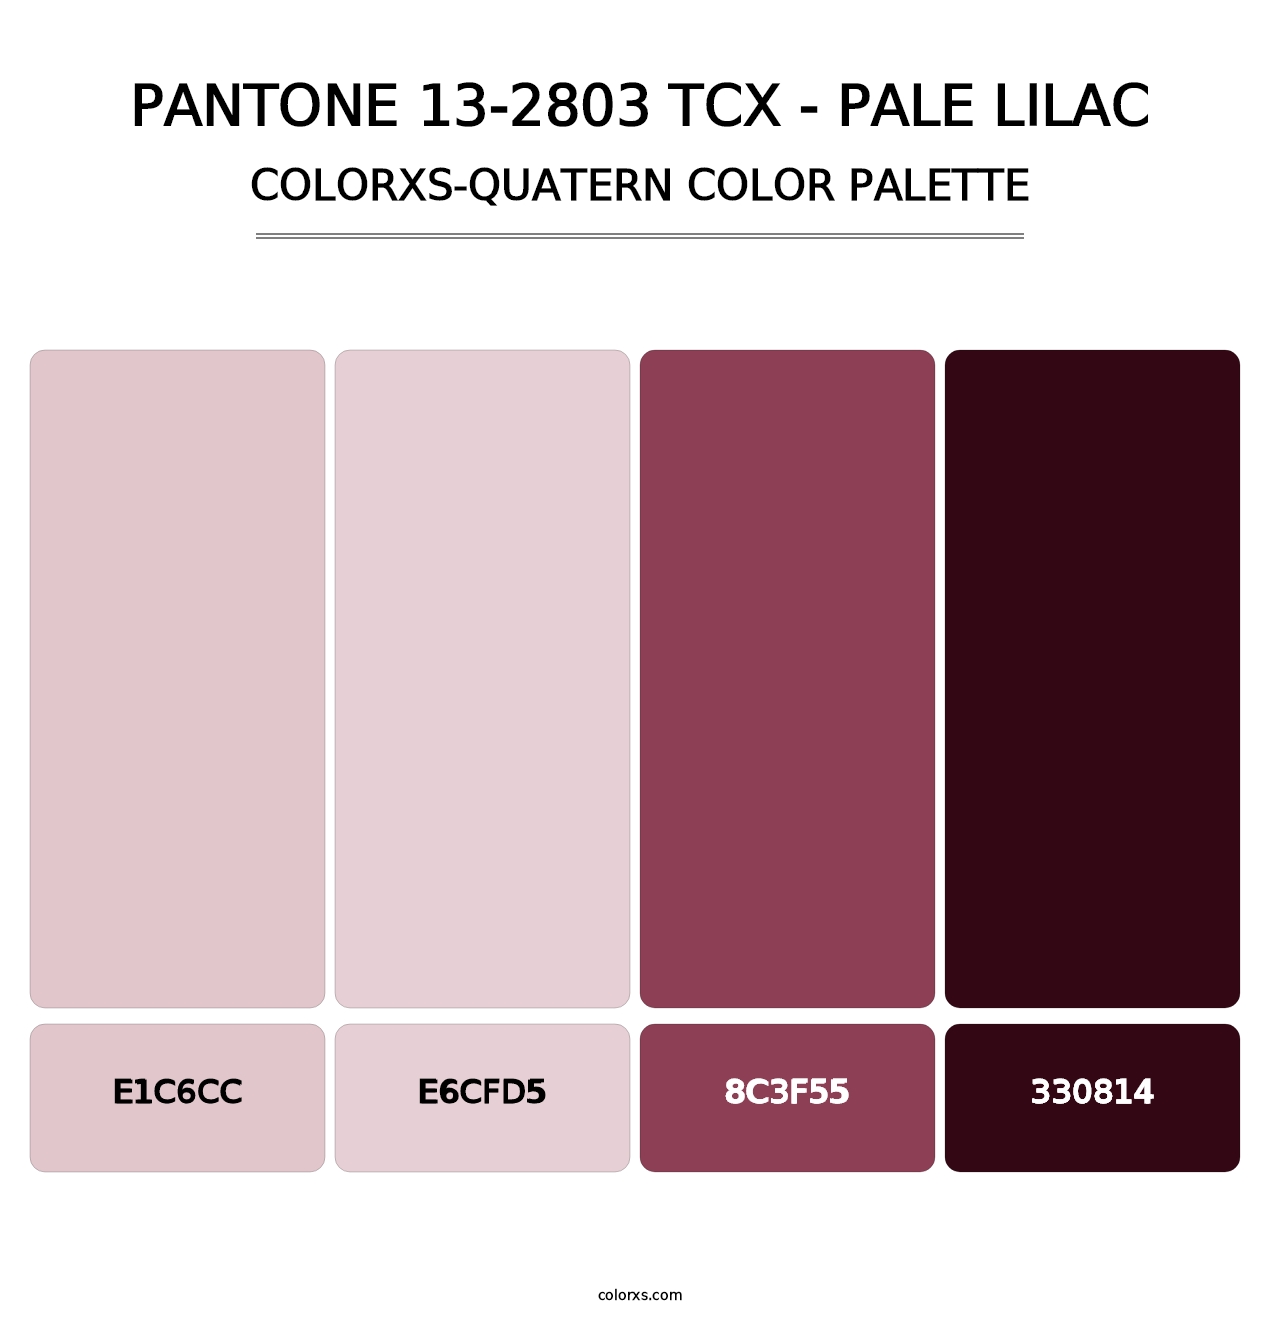 PANTONE 13-2803 TCX - Pale Lilac - Colorxs Quatern Palette